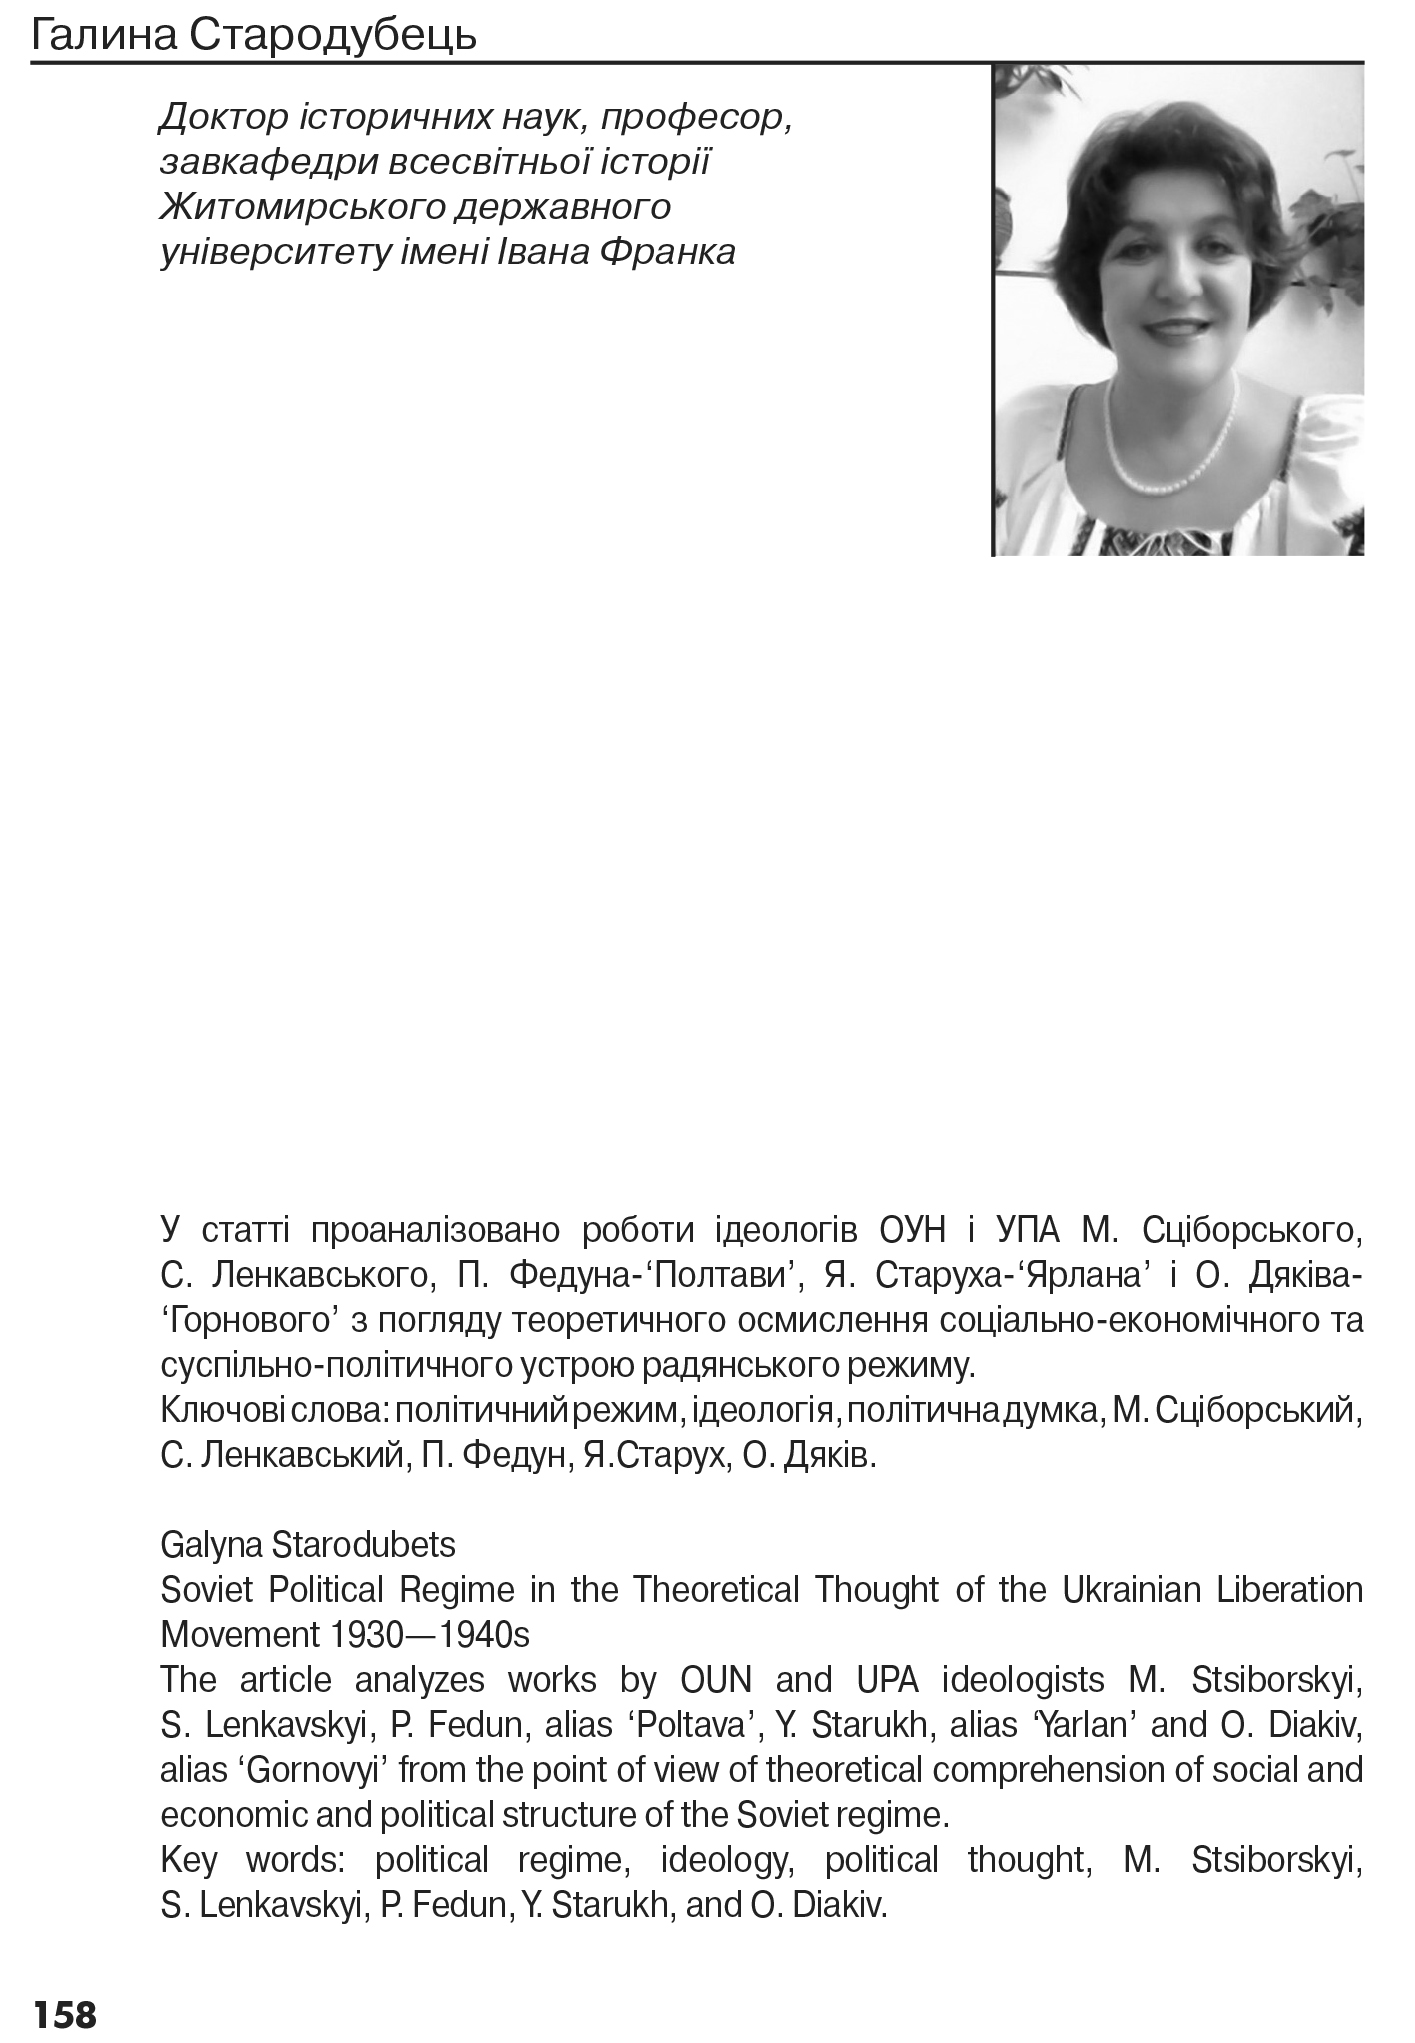 Український визвольний рух №22, ст. 158 - 170